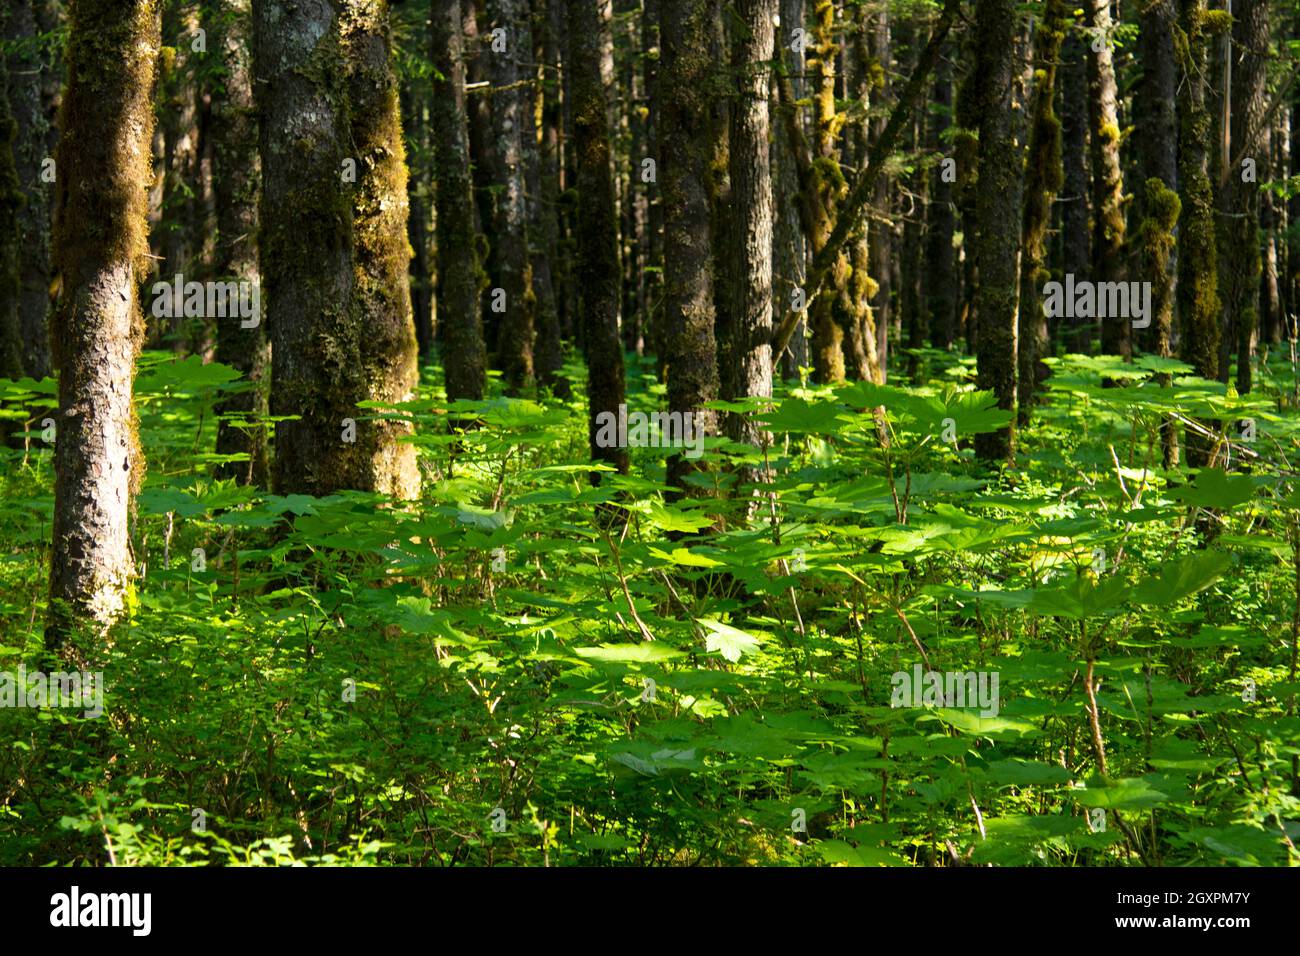 Vegetation inside a temperate taiga forest, Cordova, Alaska, USA Stock Photo